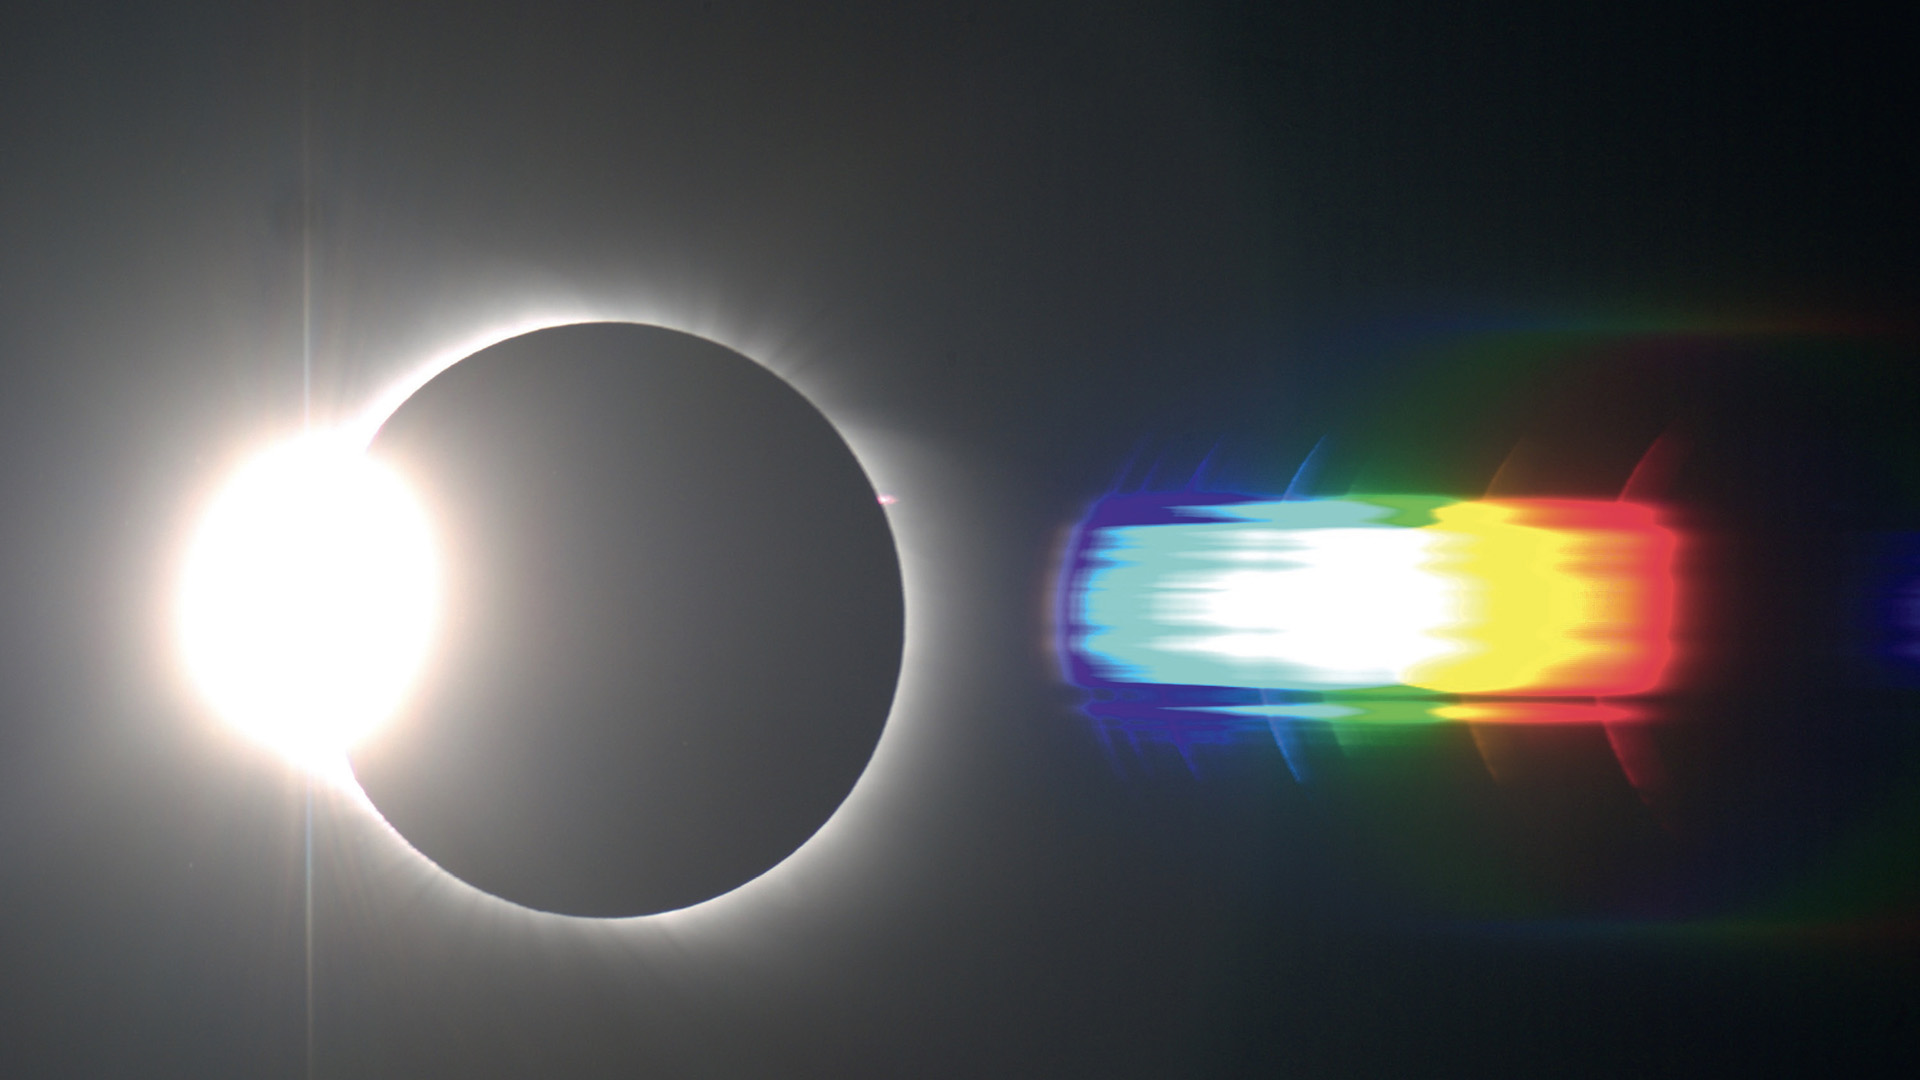 Spectrul flash al eclipsei solare totale din 1.8.2008. Liniile de emisii cele mai marcante sunt vizibile și marcate. Bernd Gährken